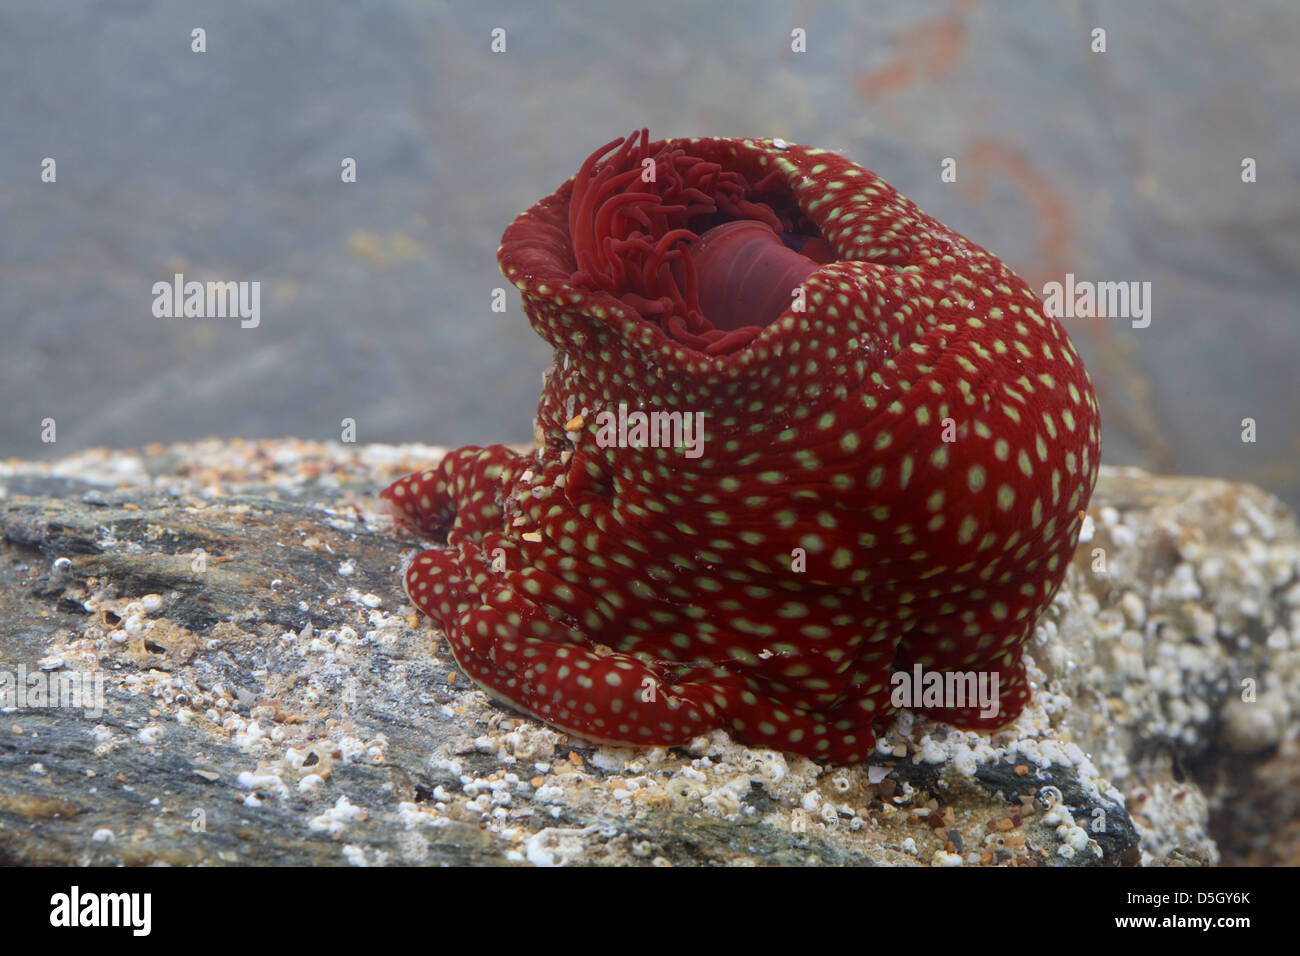 Strawberry anemone  [ Actinia fragacea ] in aquarium Stock Photo